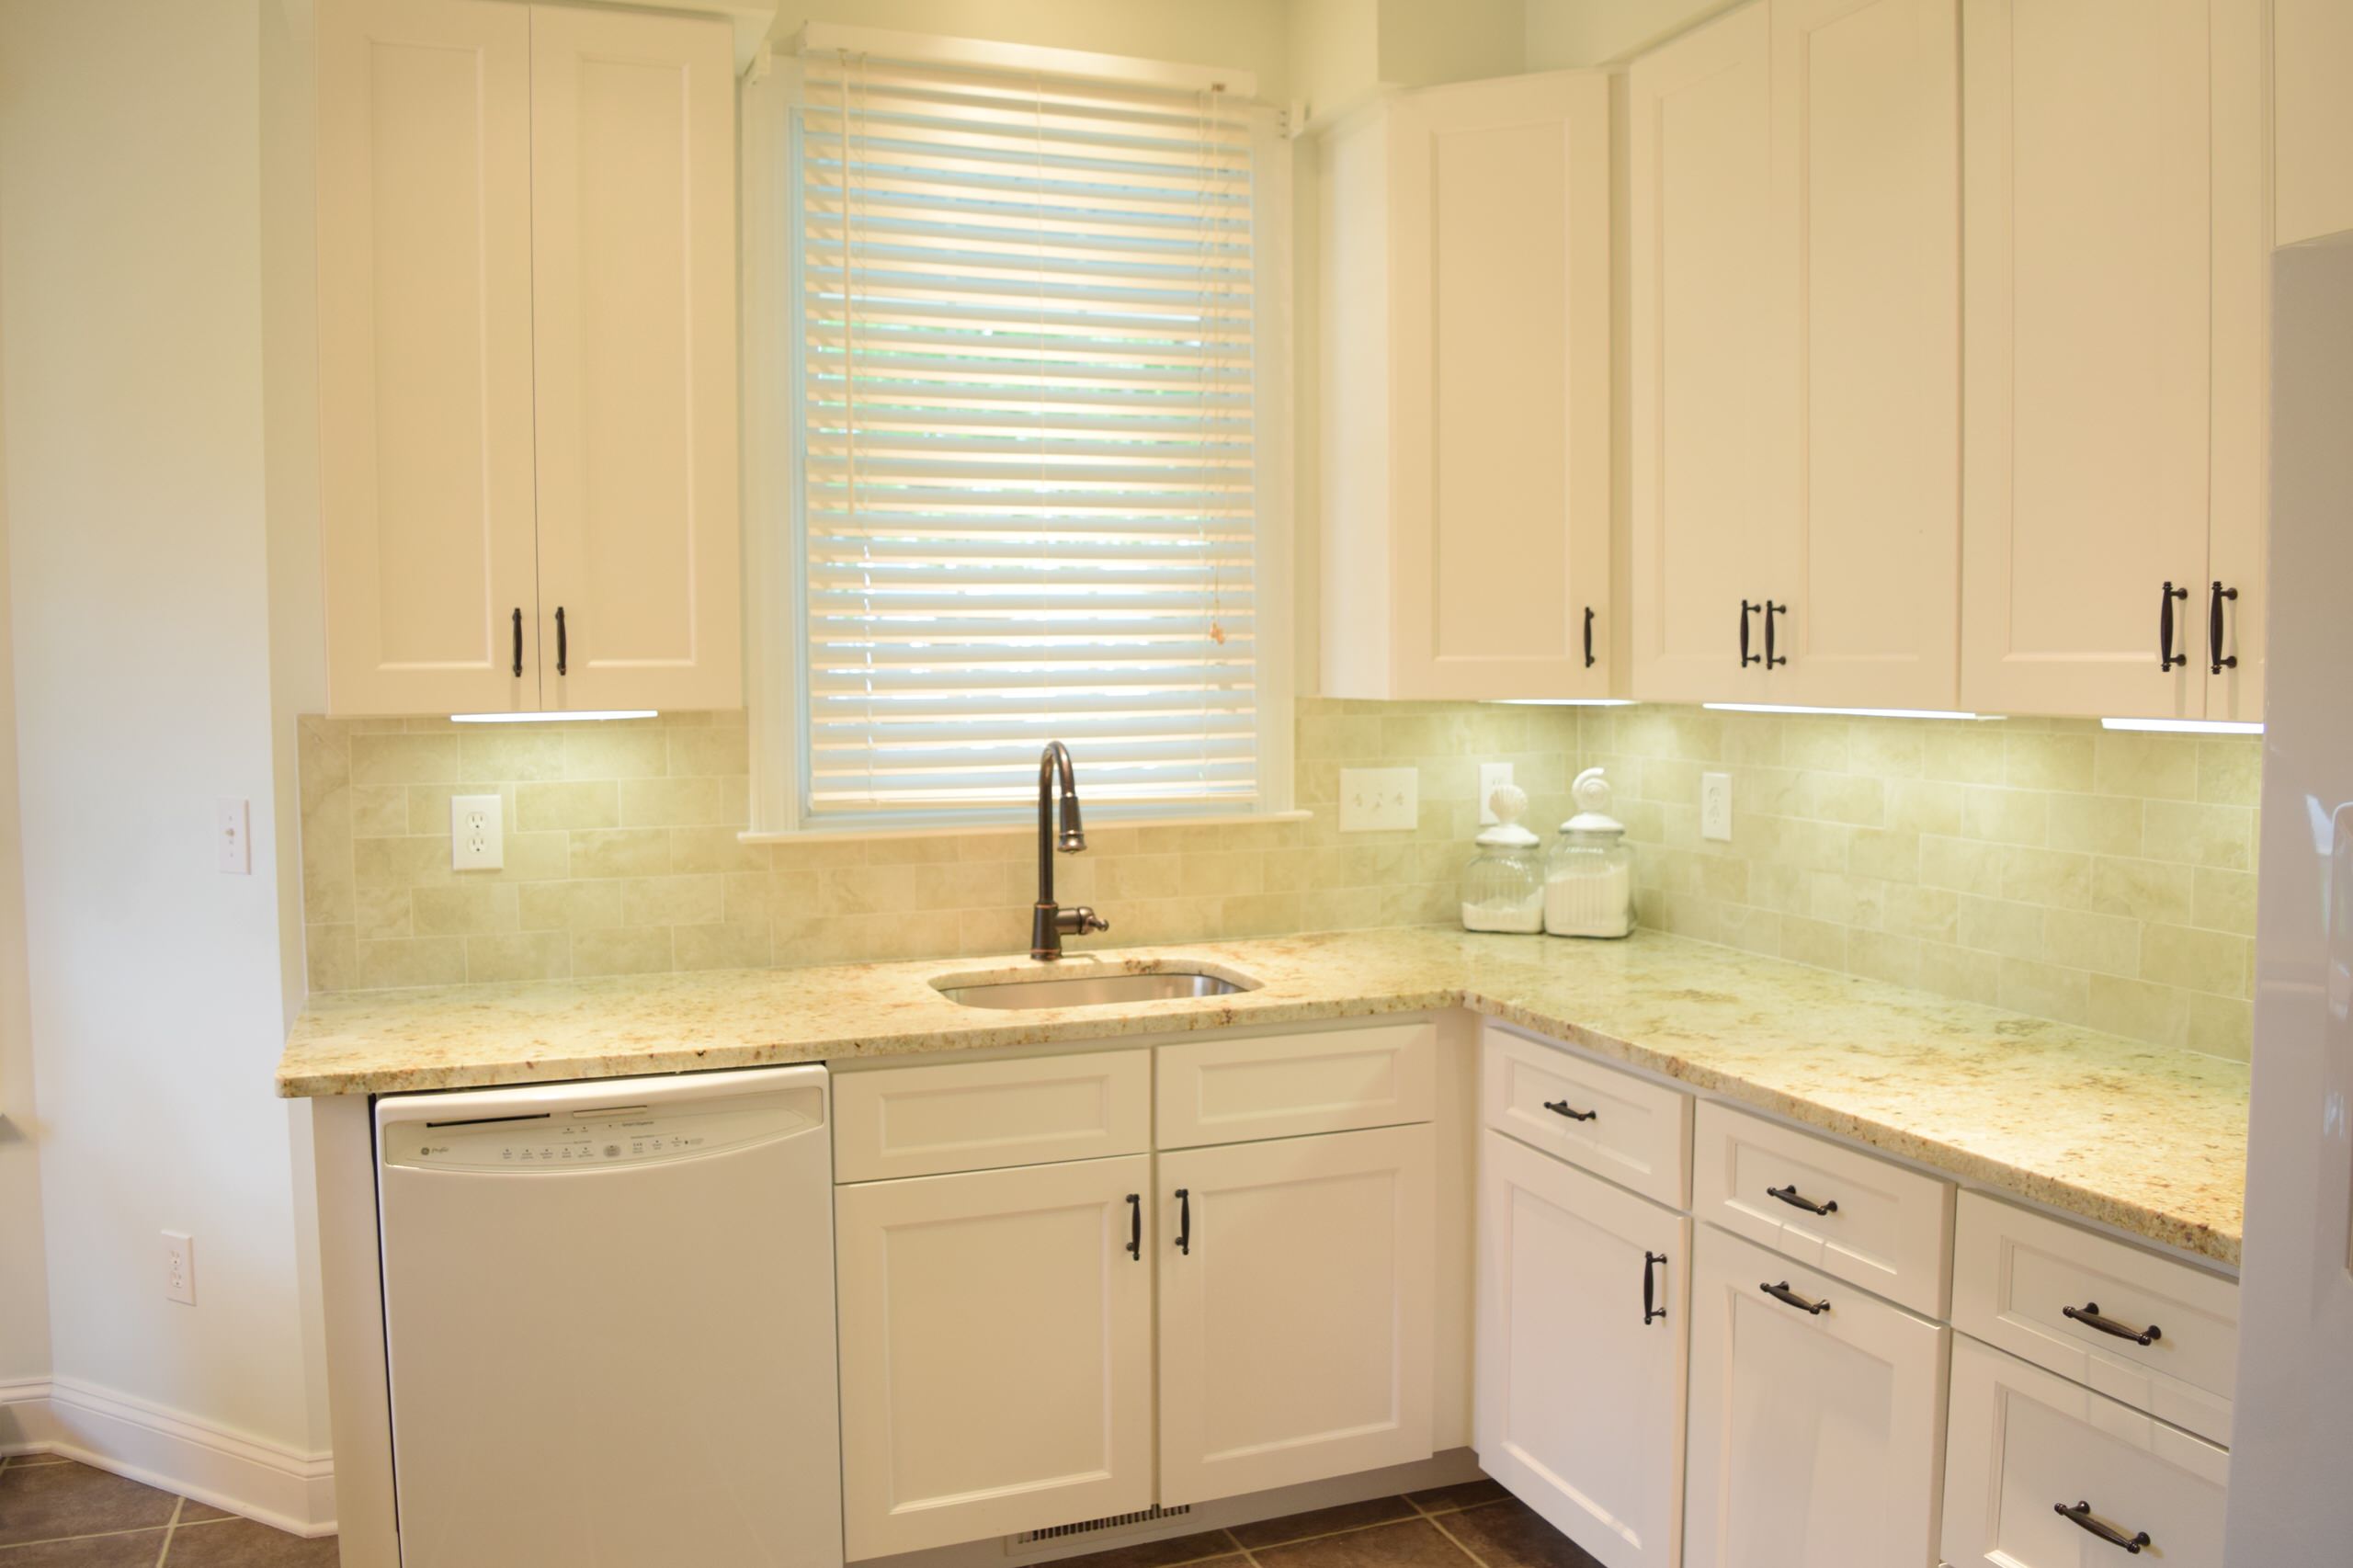 White kitchen with stylish backsplash!